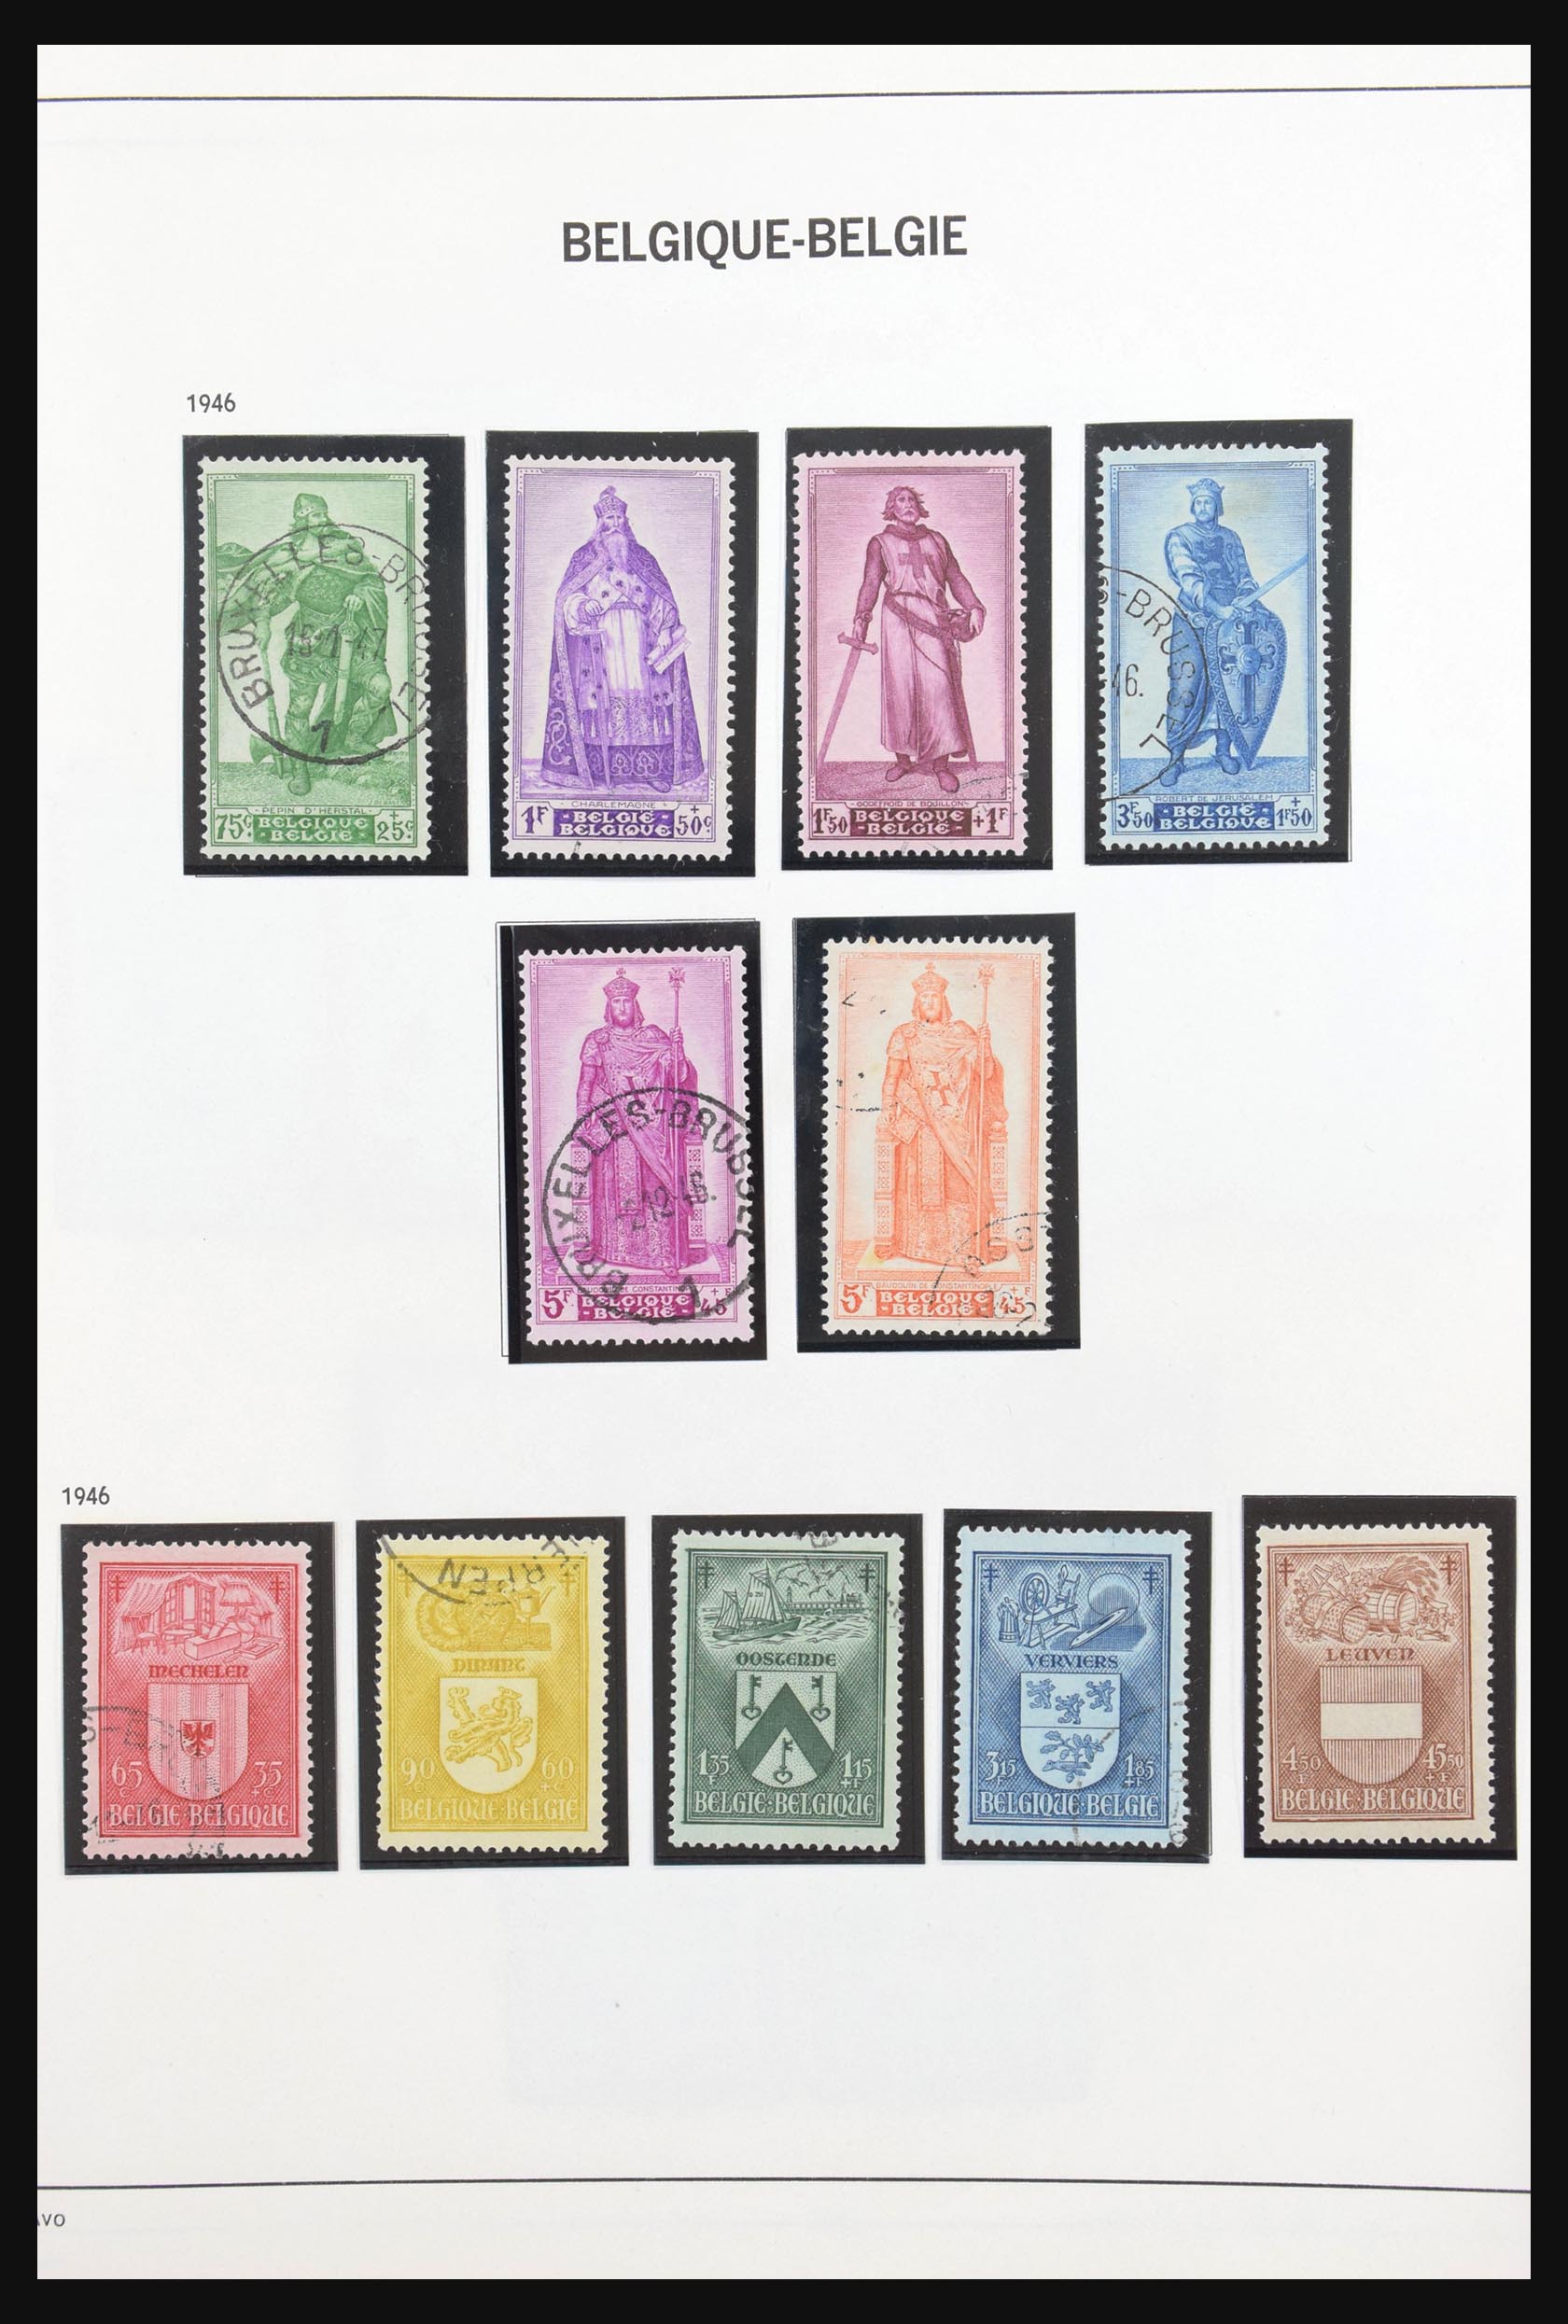 31178 165 - 31178 Belgium 1849-1951.